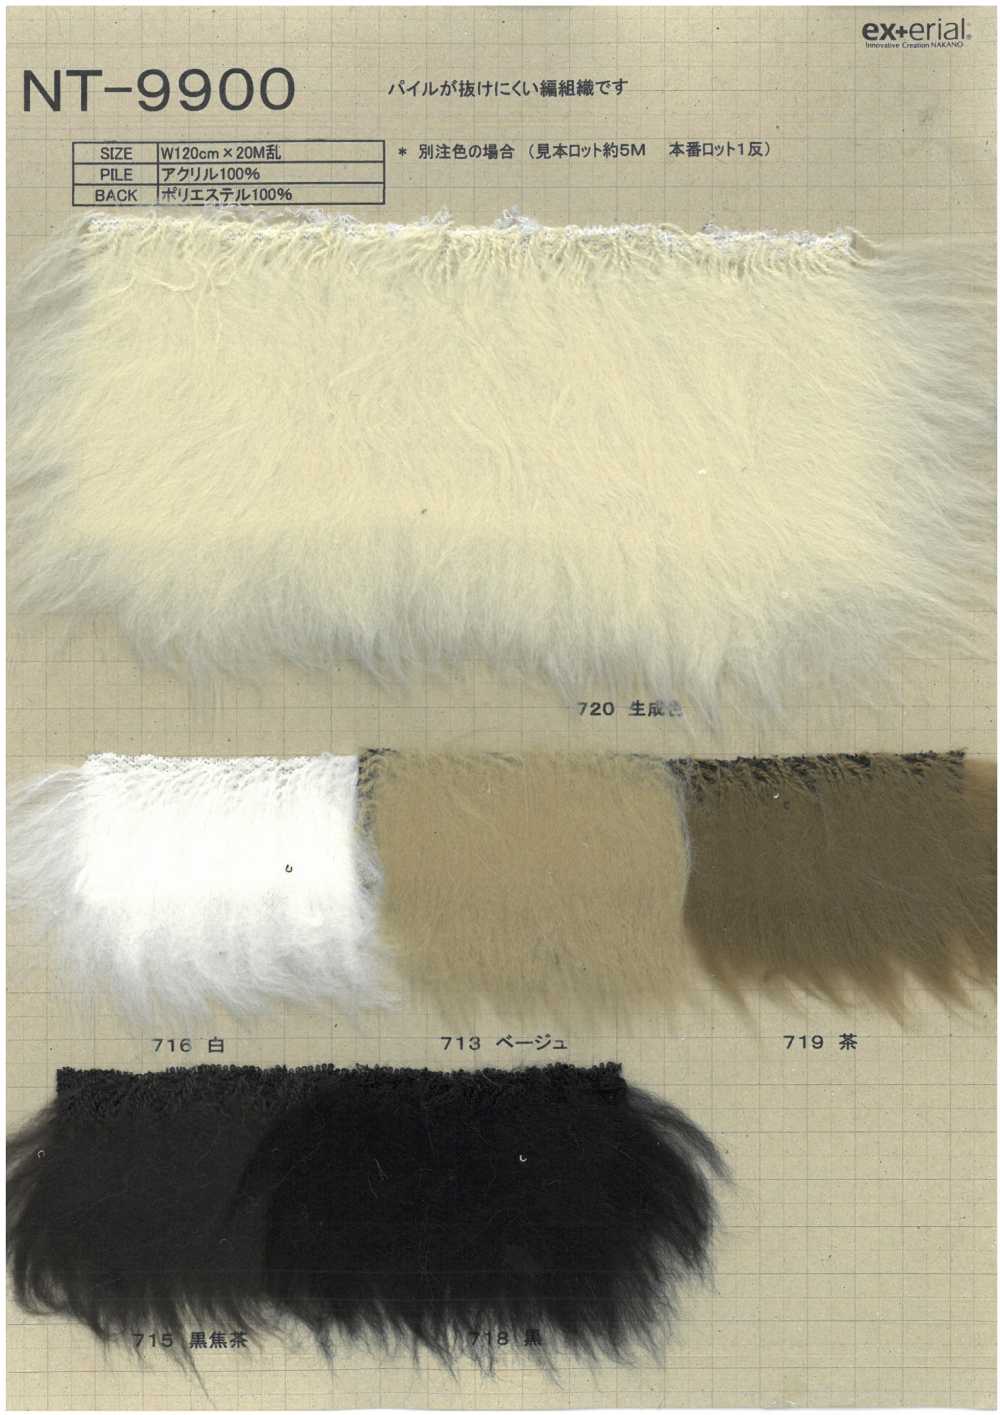 NT-9900 Pelliccia Artigianale [Mouton][Tessile / Tessuto] Industria Delle Magliette A Nakano